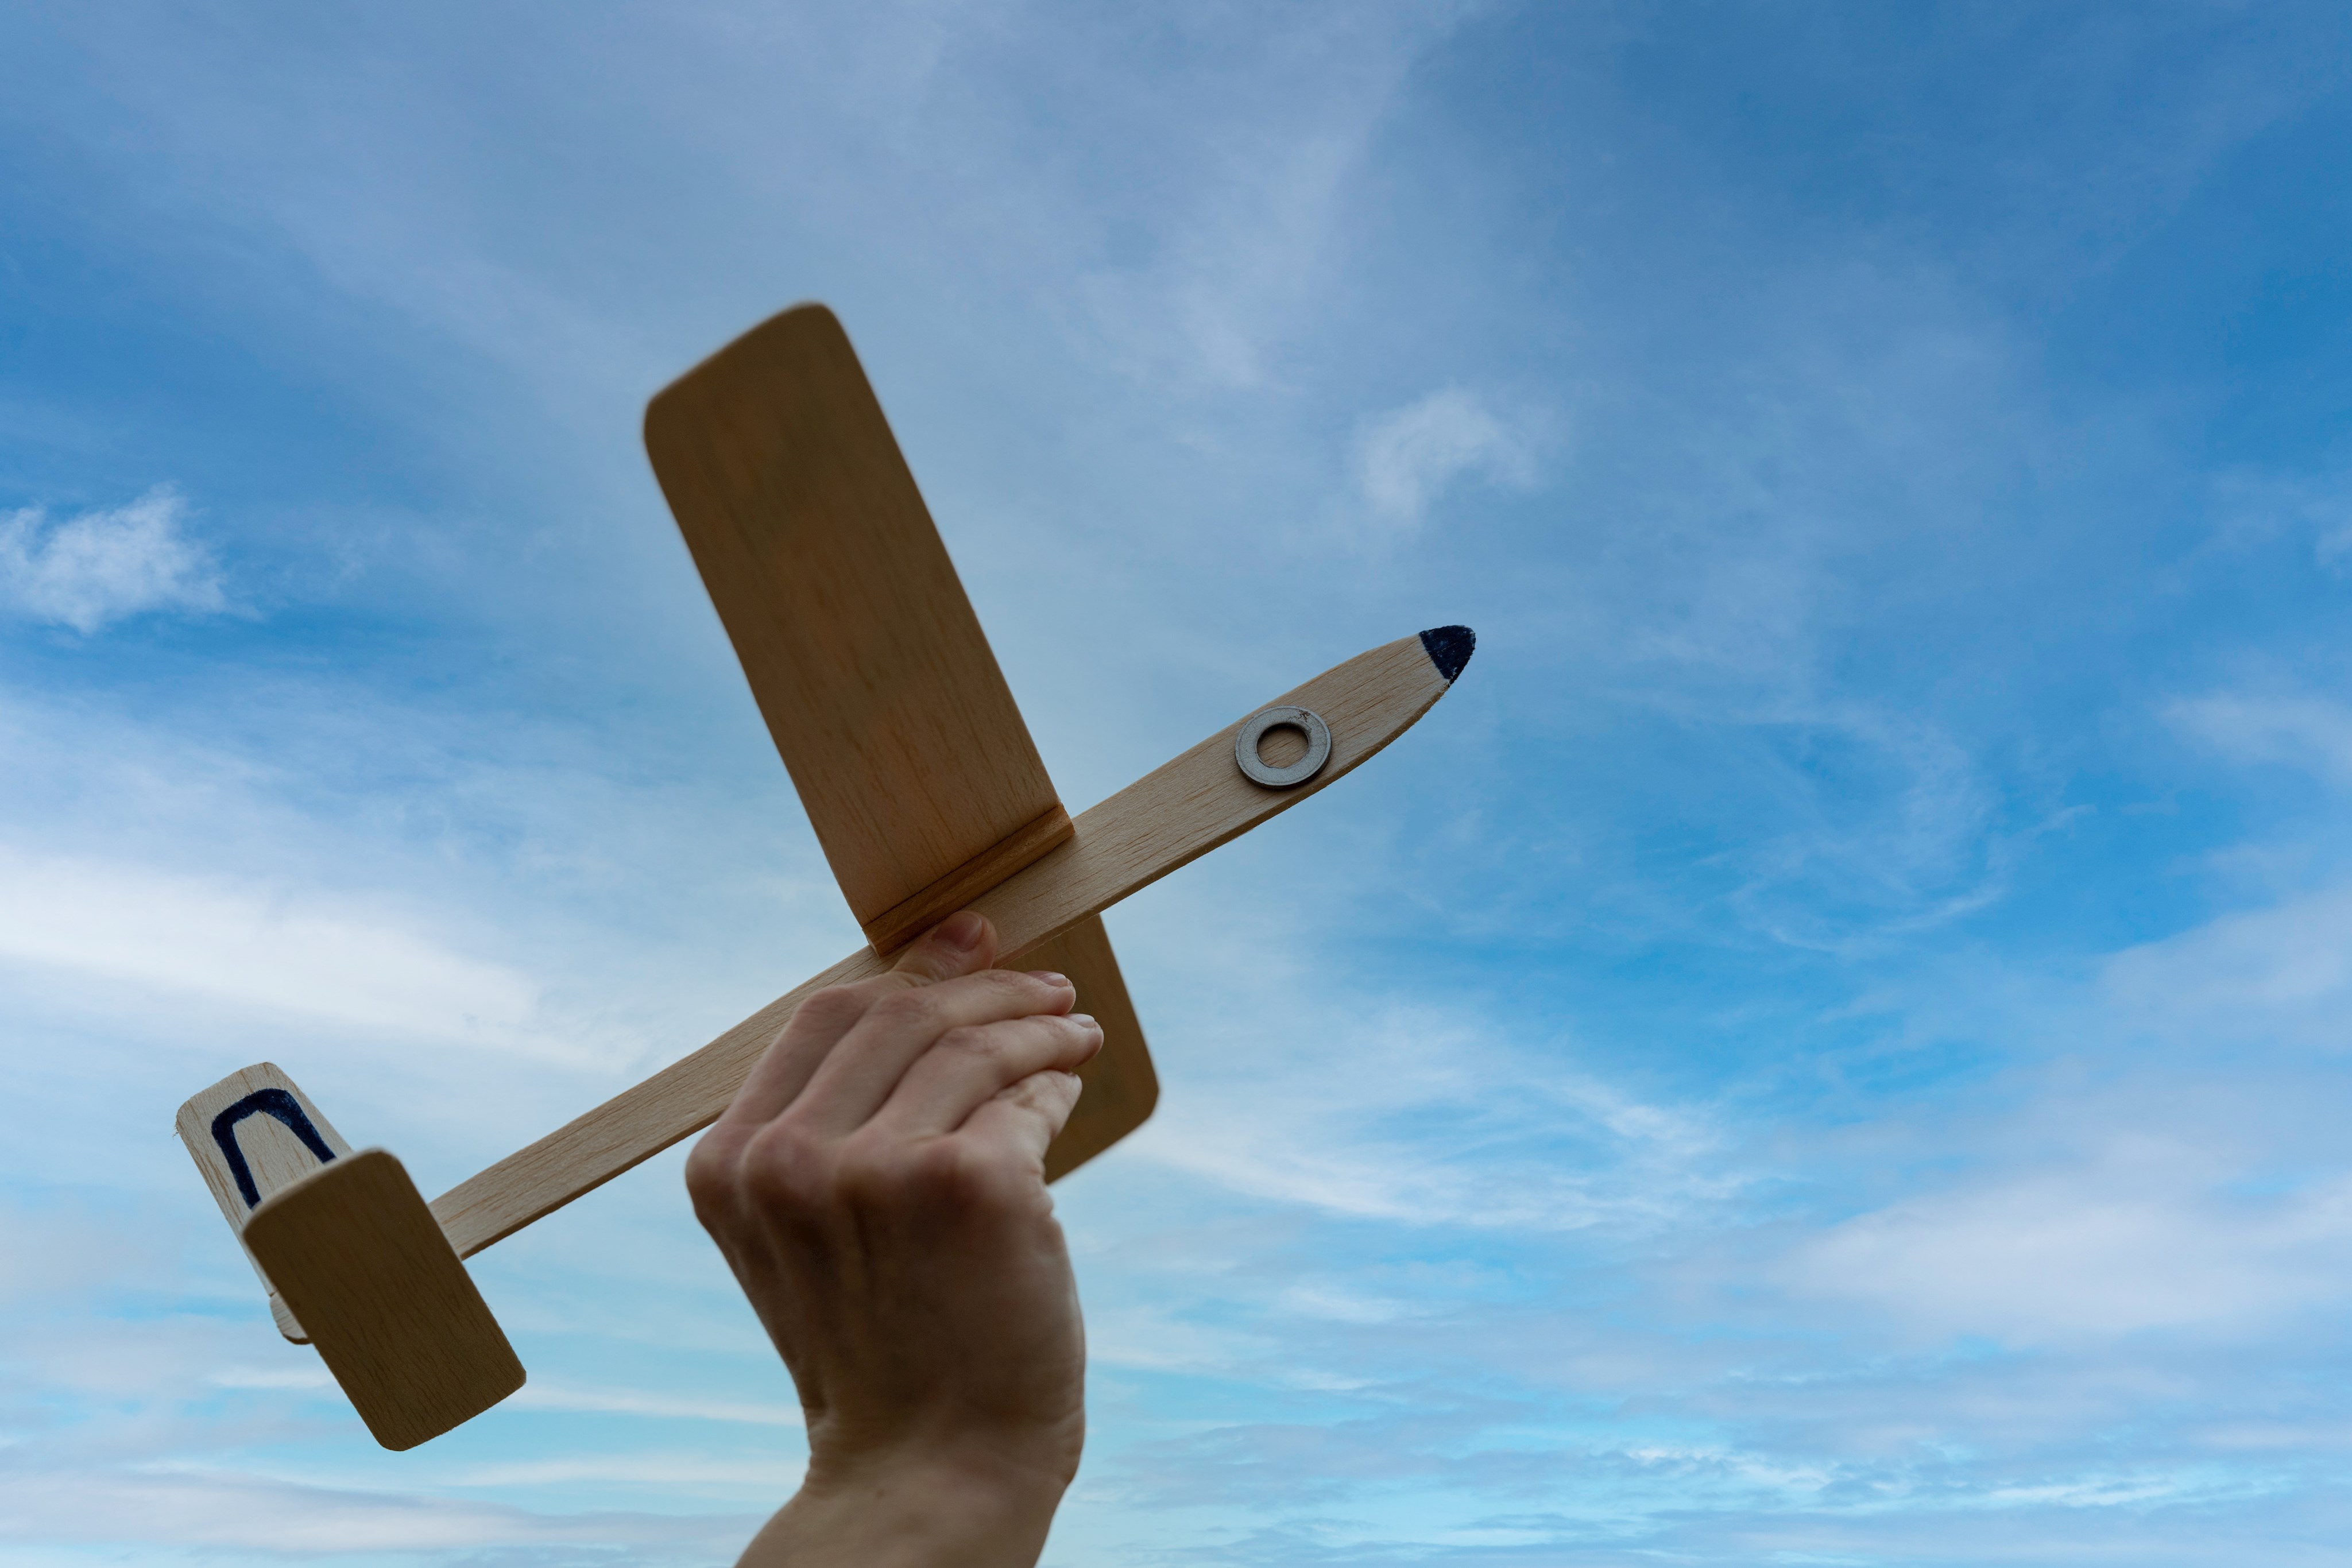 Modell-Segelflieger aus Balsa-Holz